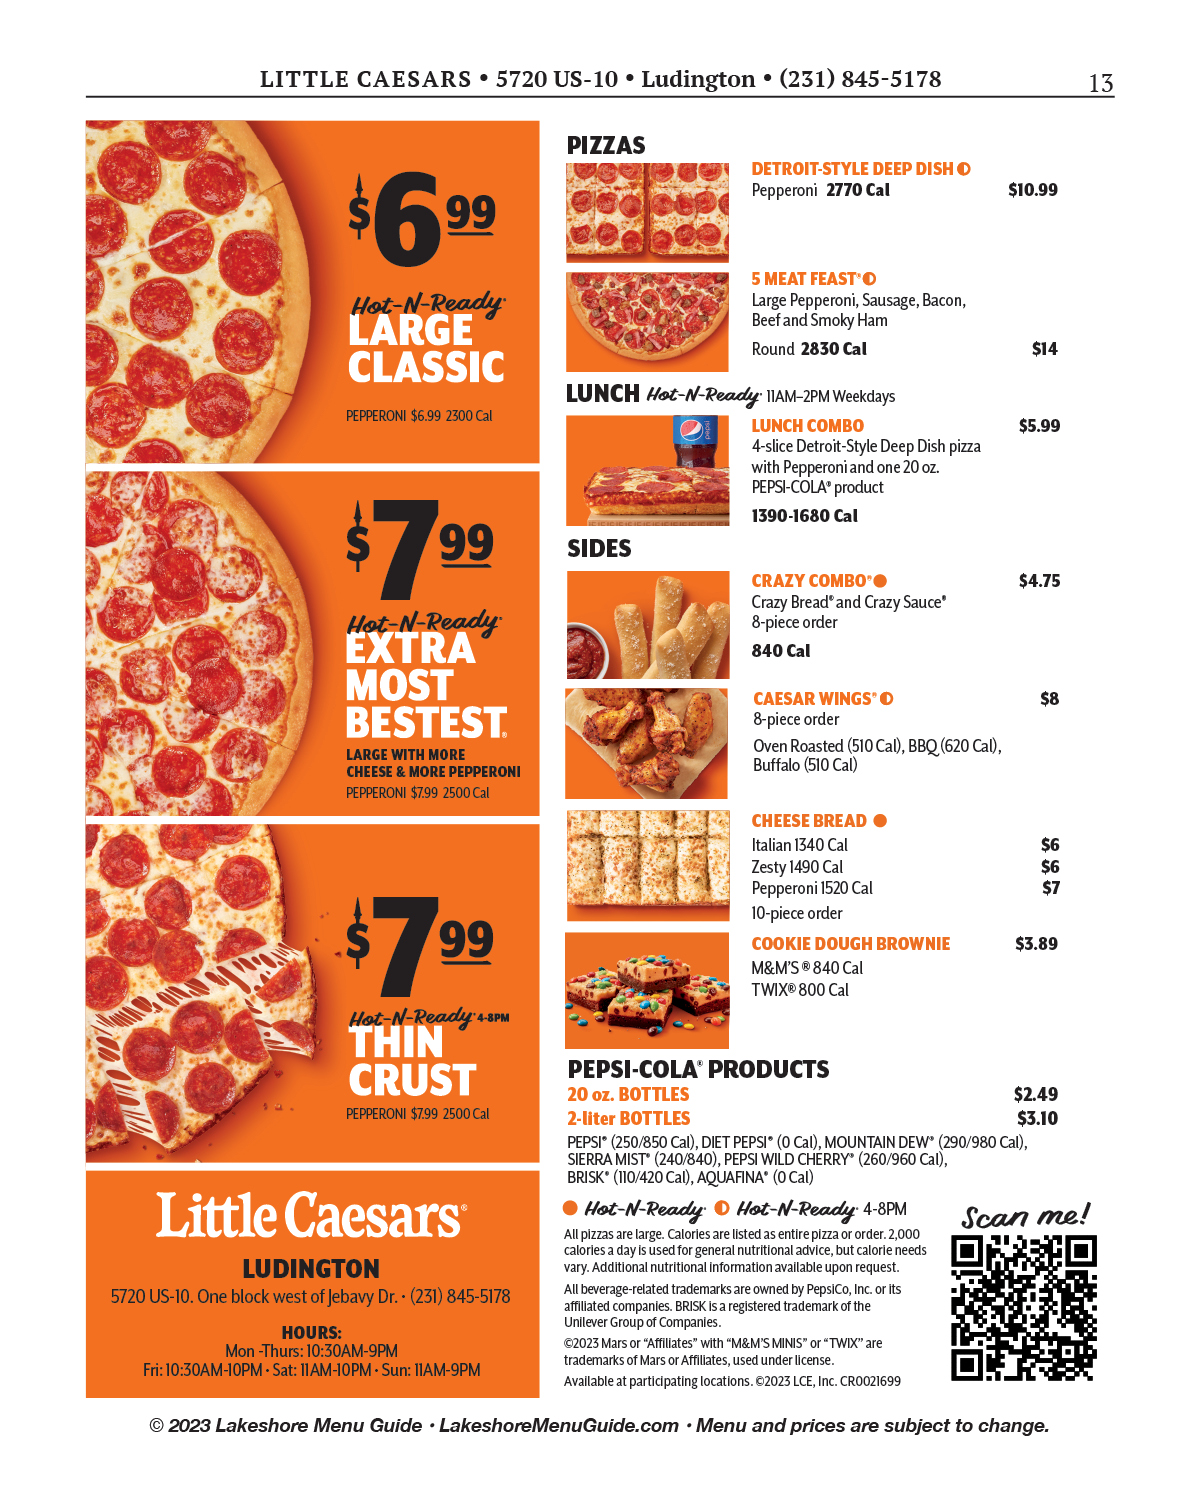 Menu Guide - Little Caesars Pizza - Visit Ludington